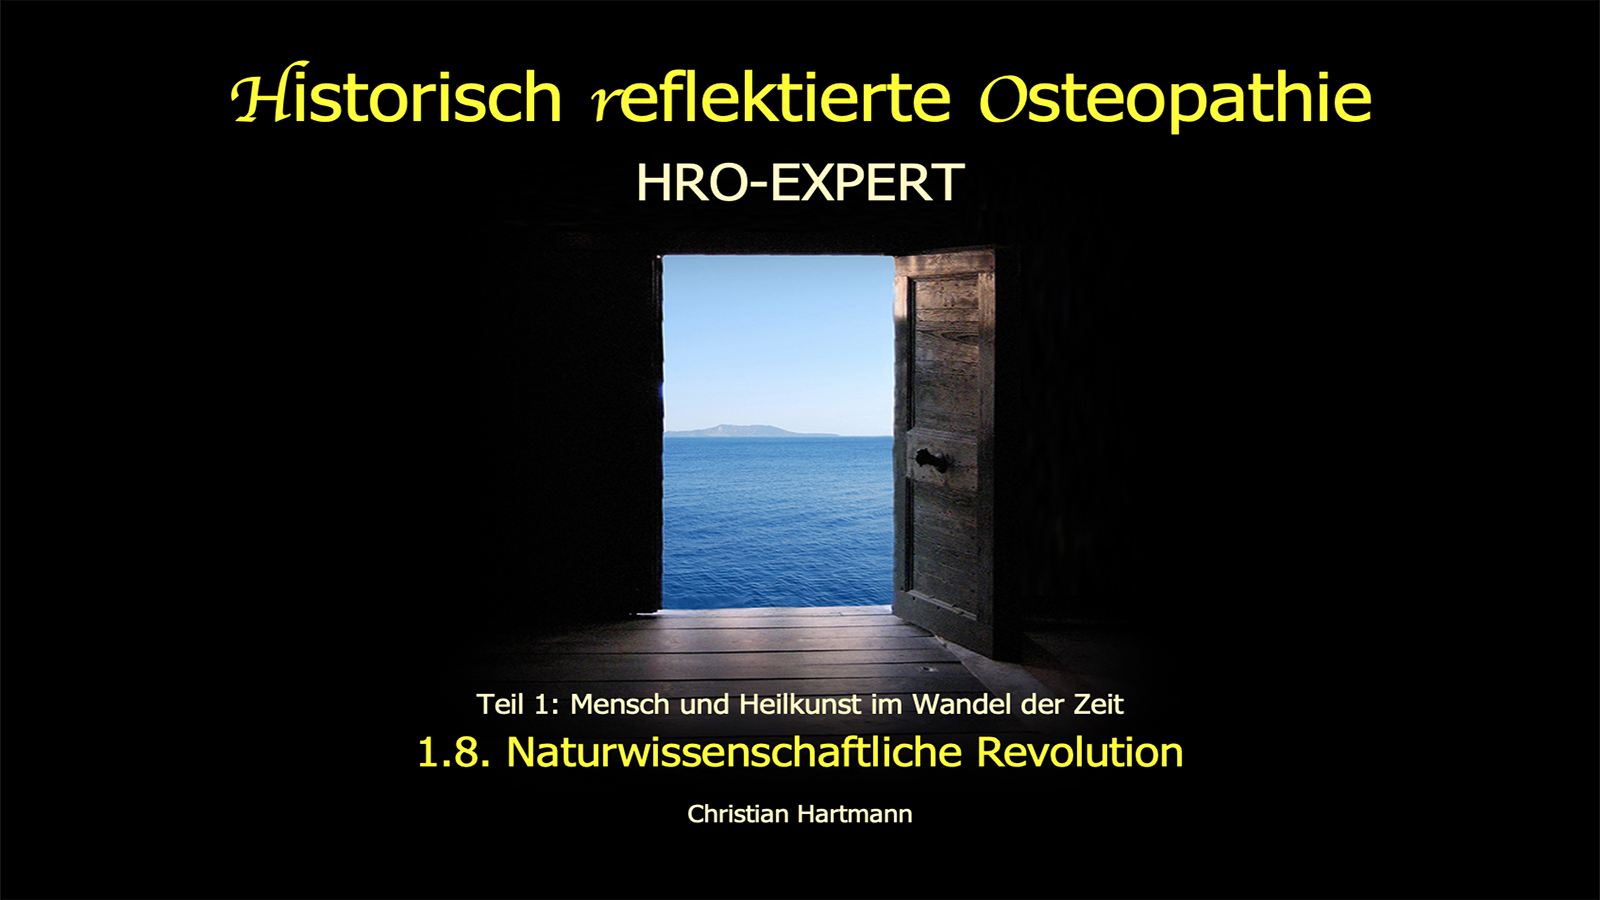 HRO-EXPERT: 1.8. Naturwissenschaftliche Revolution 